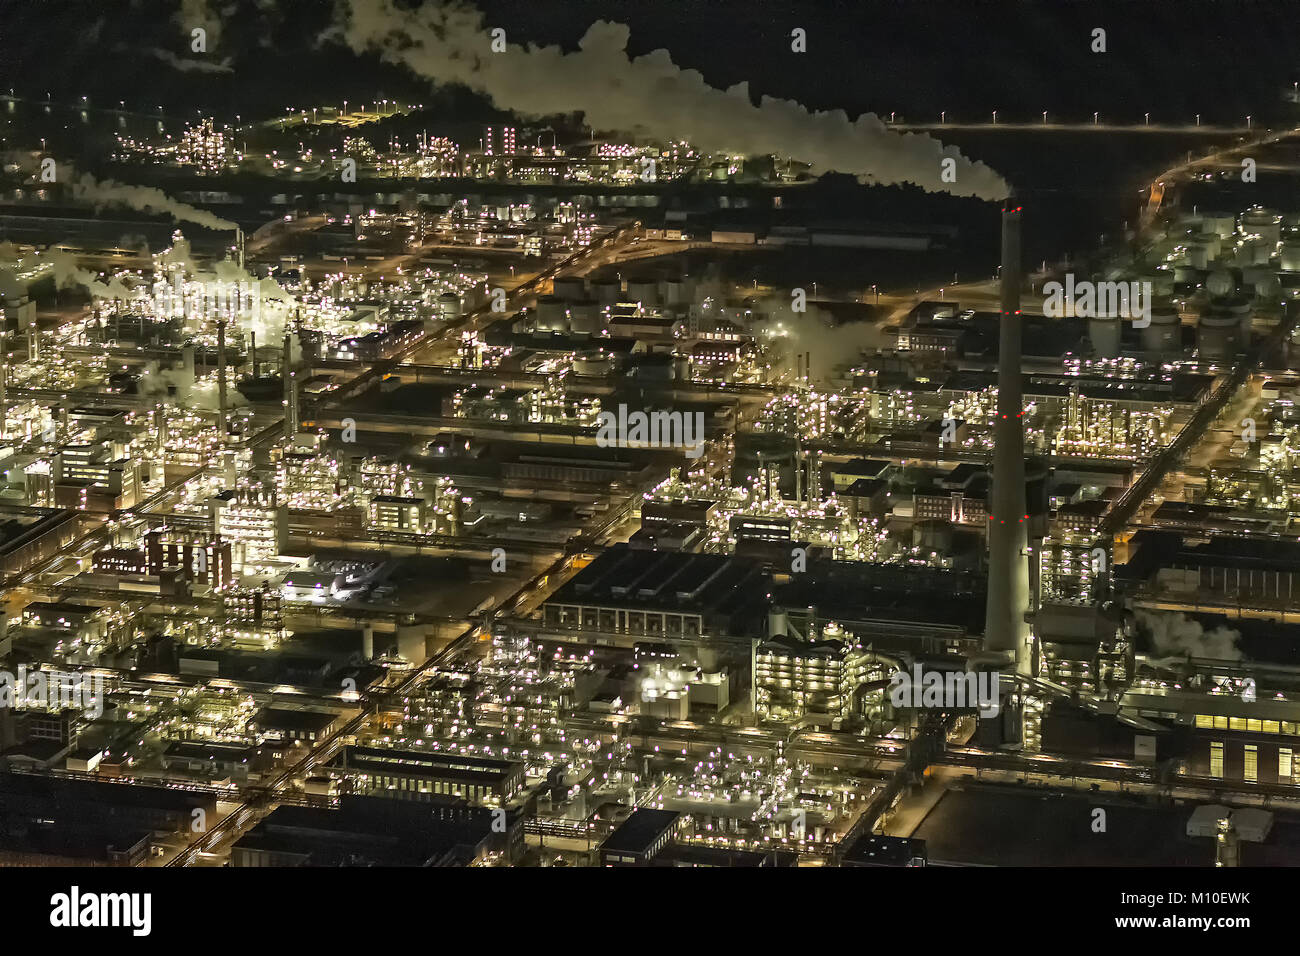 Luftbild, Chemiepark Marl ehemals Chemische Werke Hüls AG in Marl, Evonik Industries, Nachtaufnahmen, Industrieanlage, Chemiewerk bei Nacht Marl, Ruhr Stock Photo